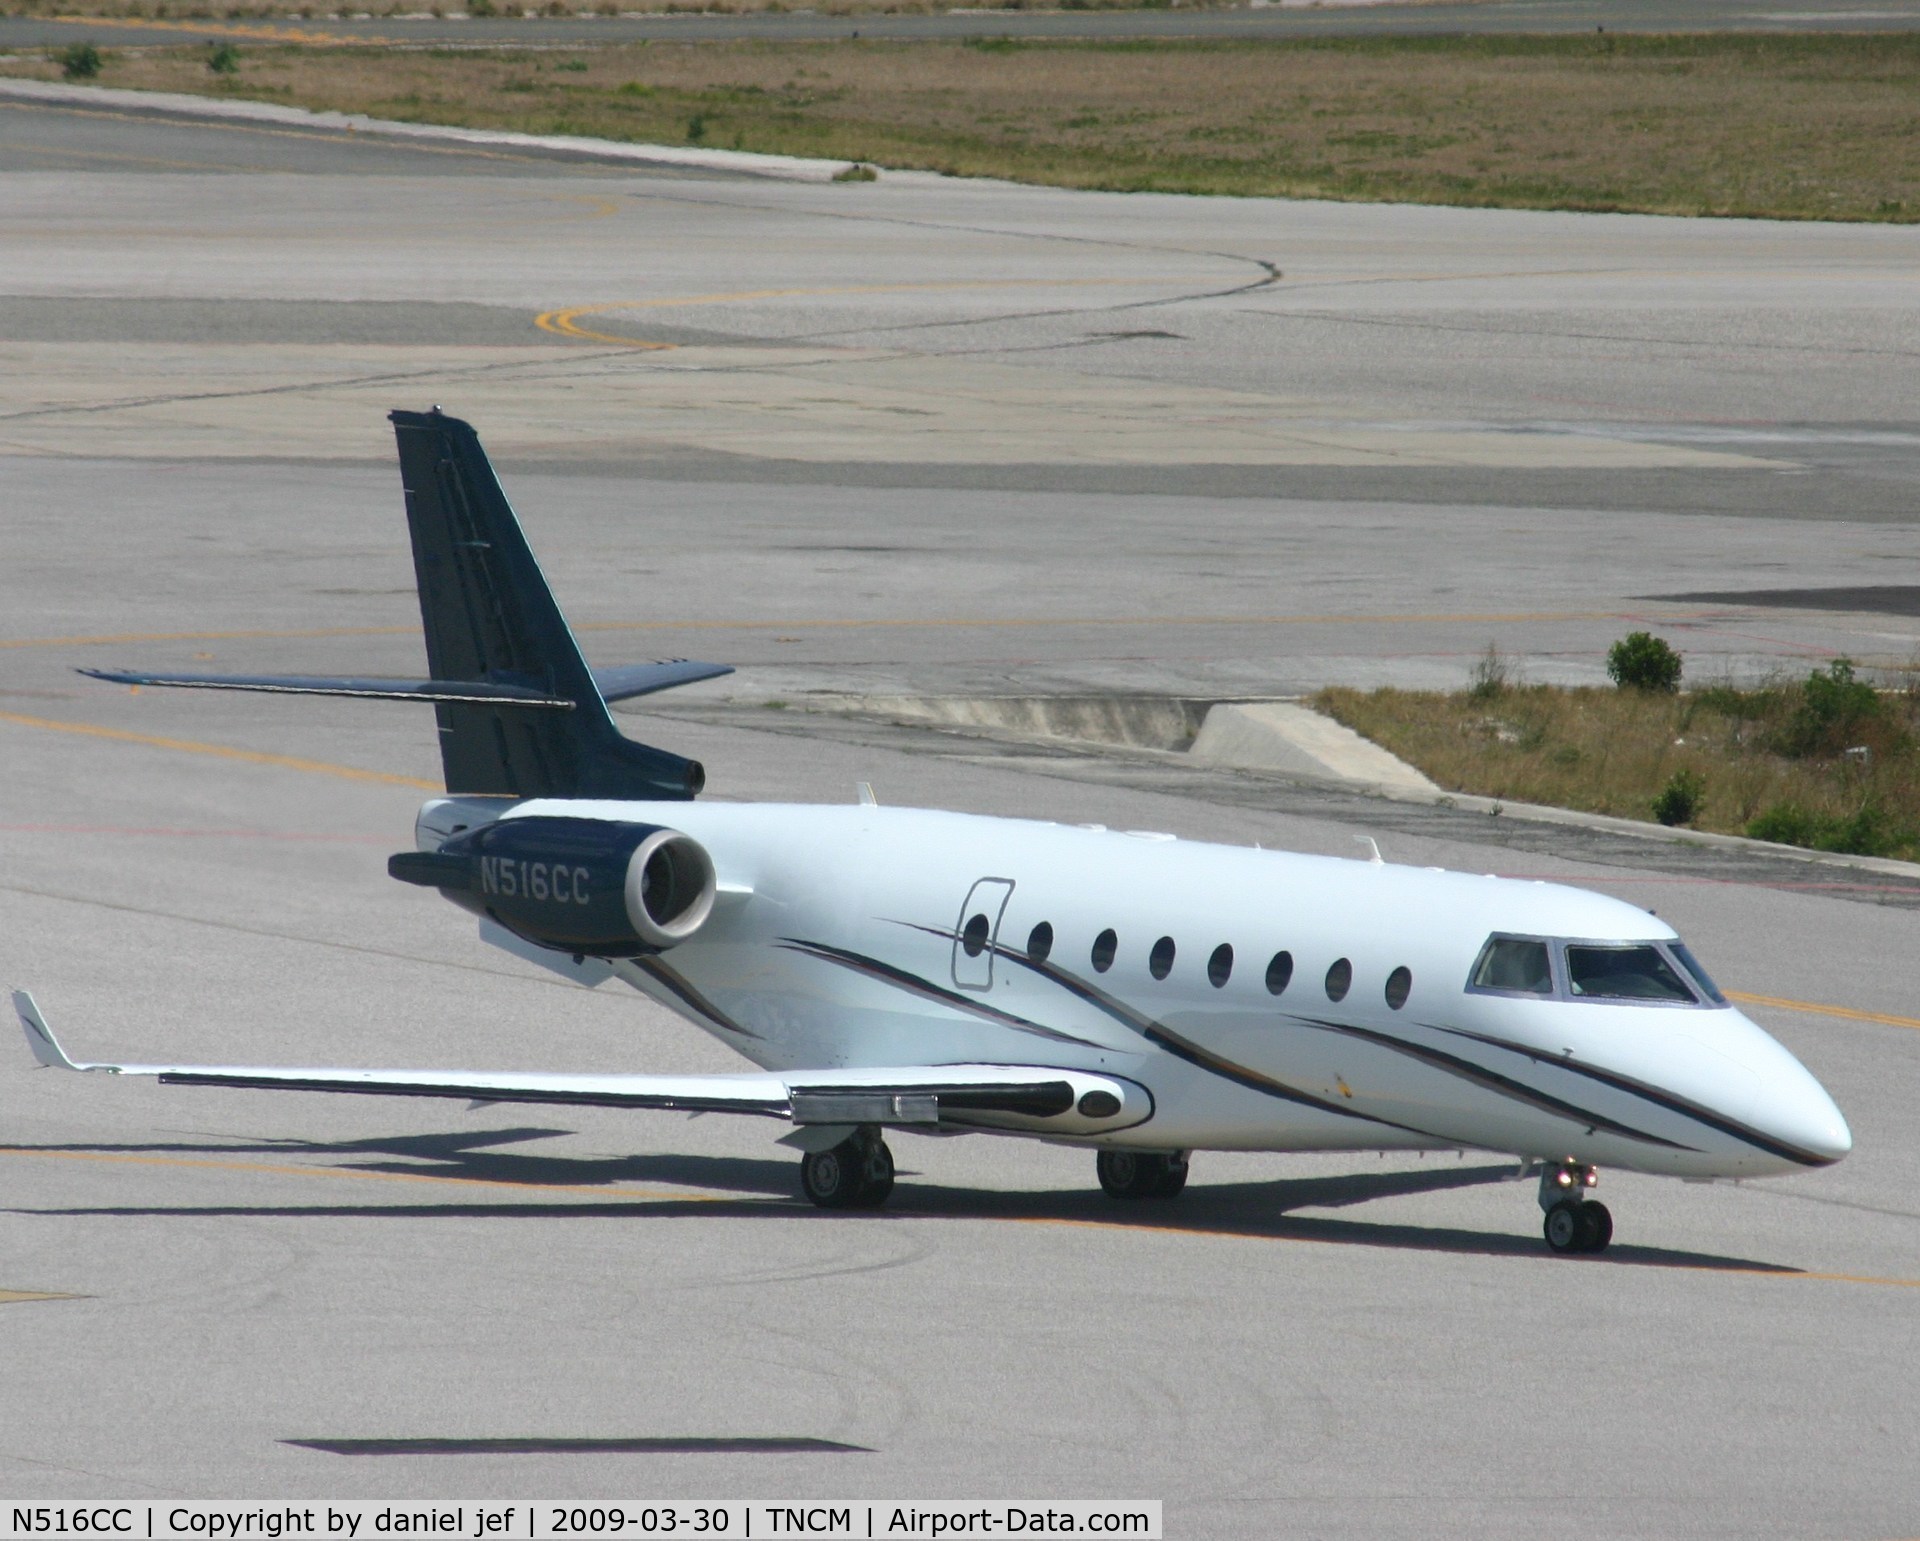 N516CC, 2000 Israel Aircraft Industries IAI-1126 Galaxy C/N 020, taxing runway 10